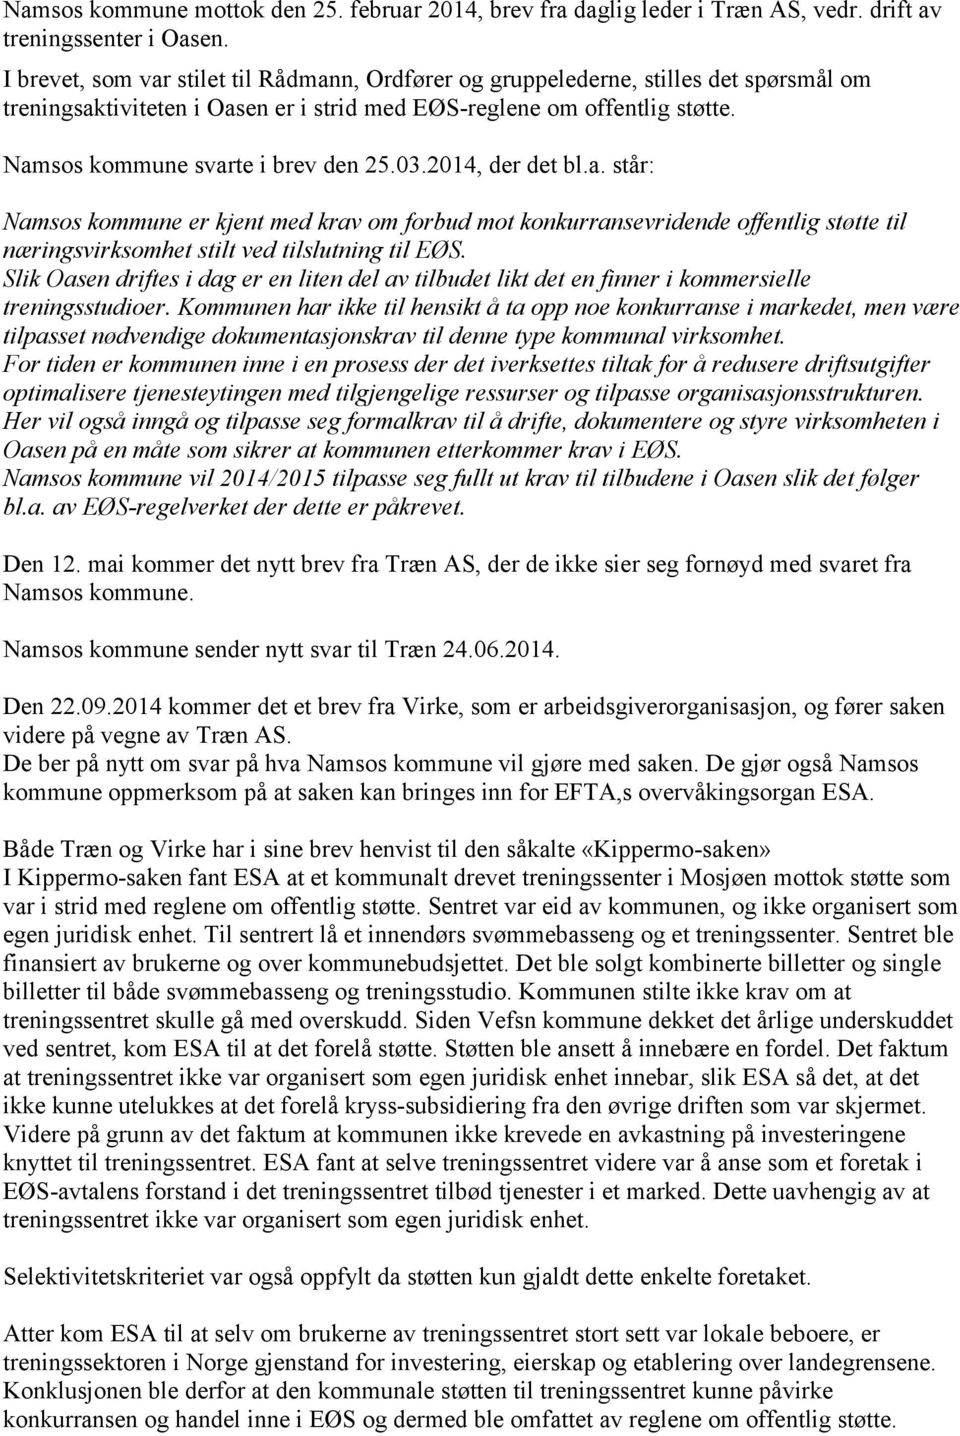 Namsos kommune svarte i brev den 25.03.2014, der det bl.a. står: Namsos kommune er kjent med krav om forbud mot konkurransevridende offentlig støtte til næringsvirksomhet stilt ved tilslutning til EØS.